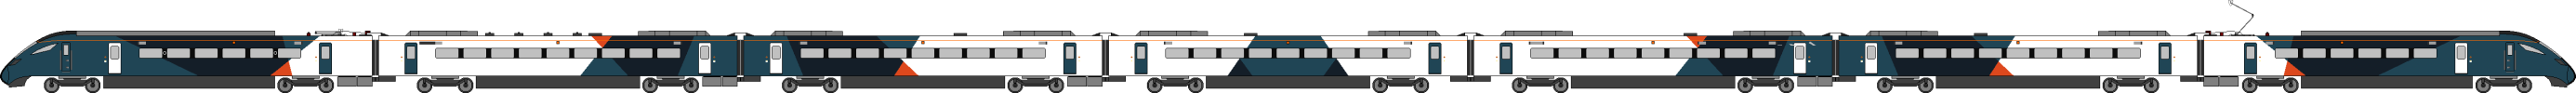 Avanti Class 807 w-pantograph.png